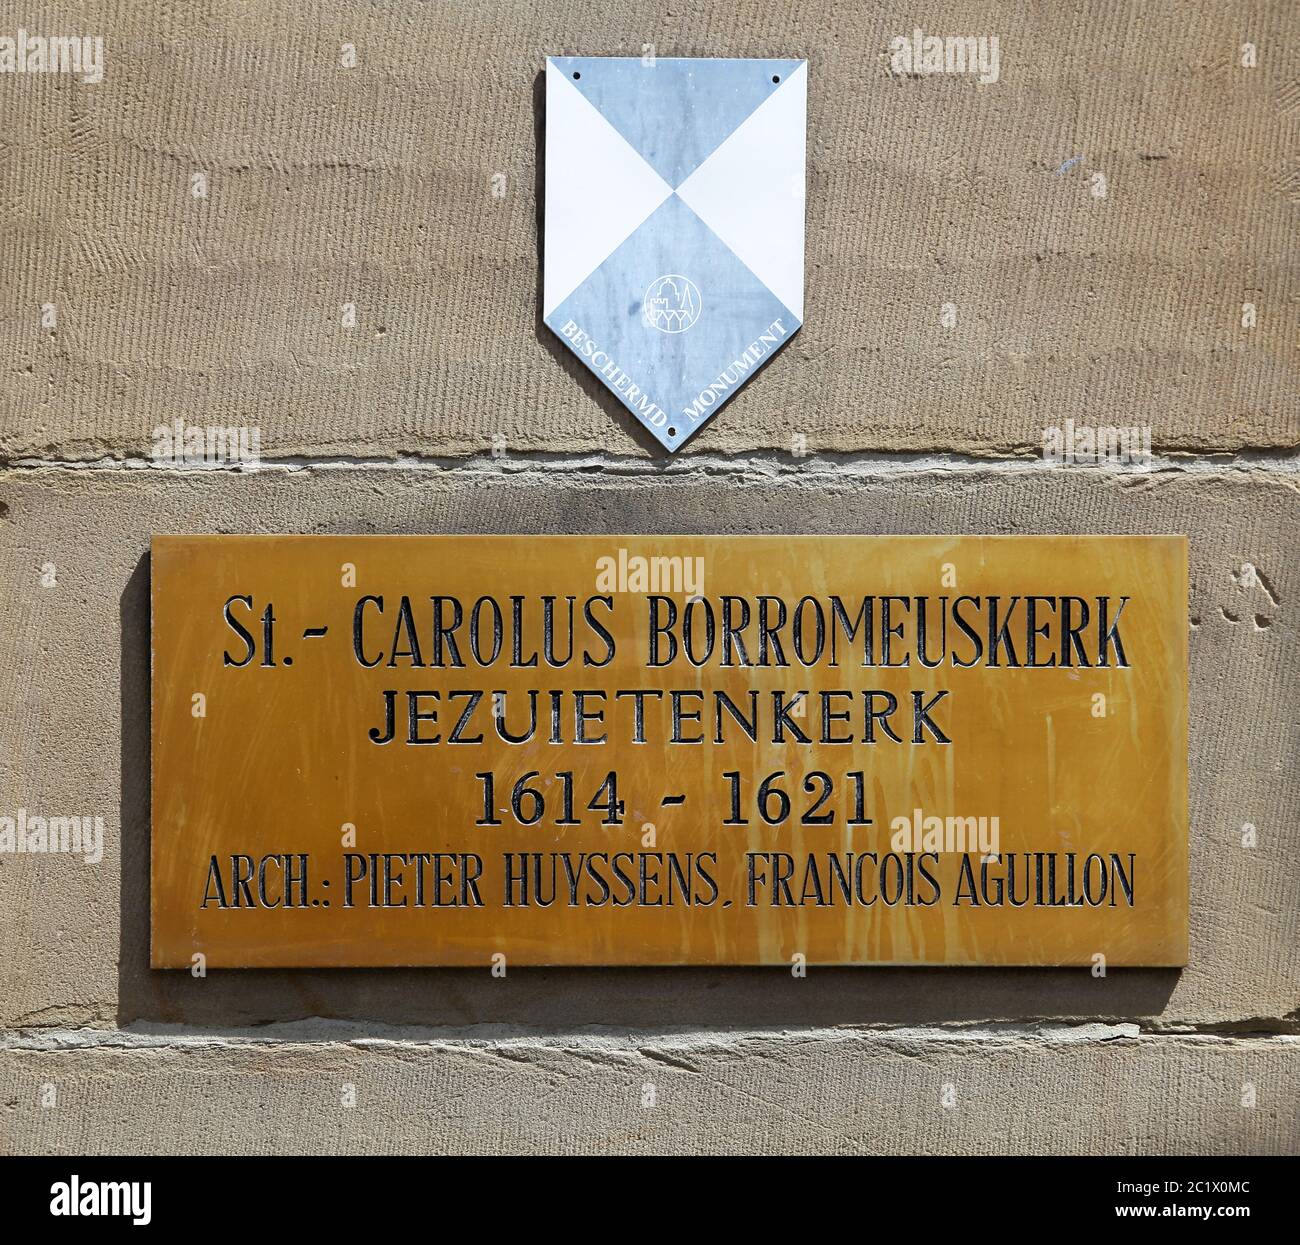 St. Charles Borromeo Church/Sint-Carolus Borromeuskerk.eine Kirche im Zentrum von Antwerpen, am Hendrik Conscience Square gelegen. Sie wurde 1626 als Jesuitenkirche von Antwerpen erbaut, die 1773 geschlossen wurde. Sie wurde 1779 dem Heiligen Karl Borromäus gewidmet. Die Kirche war früher bekannt für 39 Deckenstücke von Rubens, die bei einem Brand verloren gingen, als der Blitz die Kirche am 18. Juli 1718 traf. Stockfoto